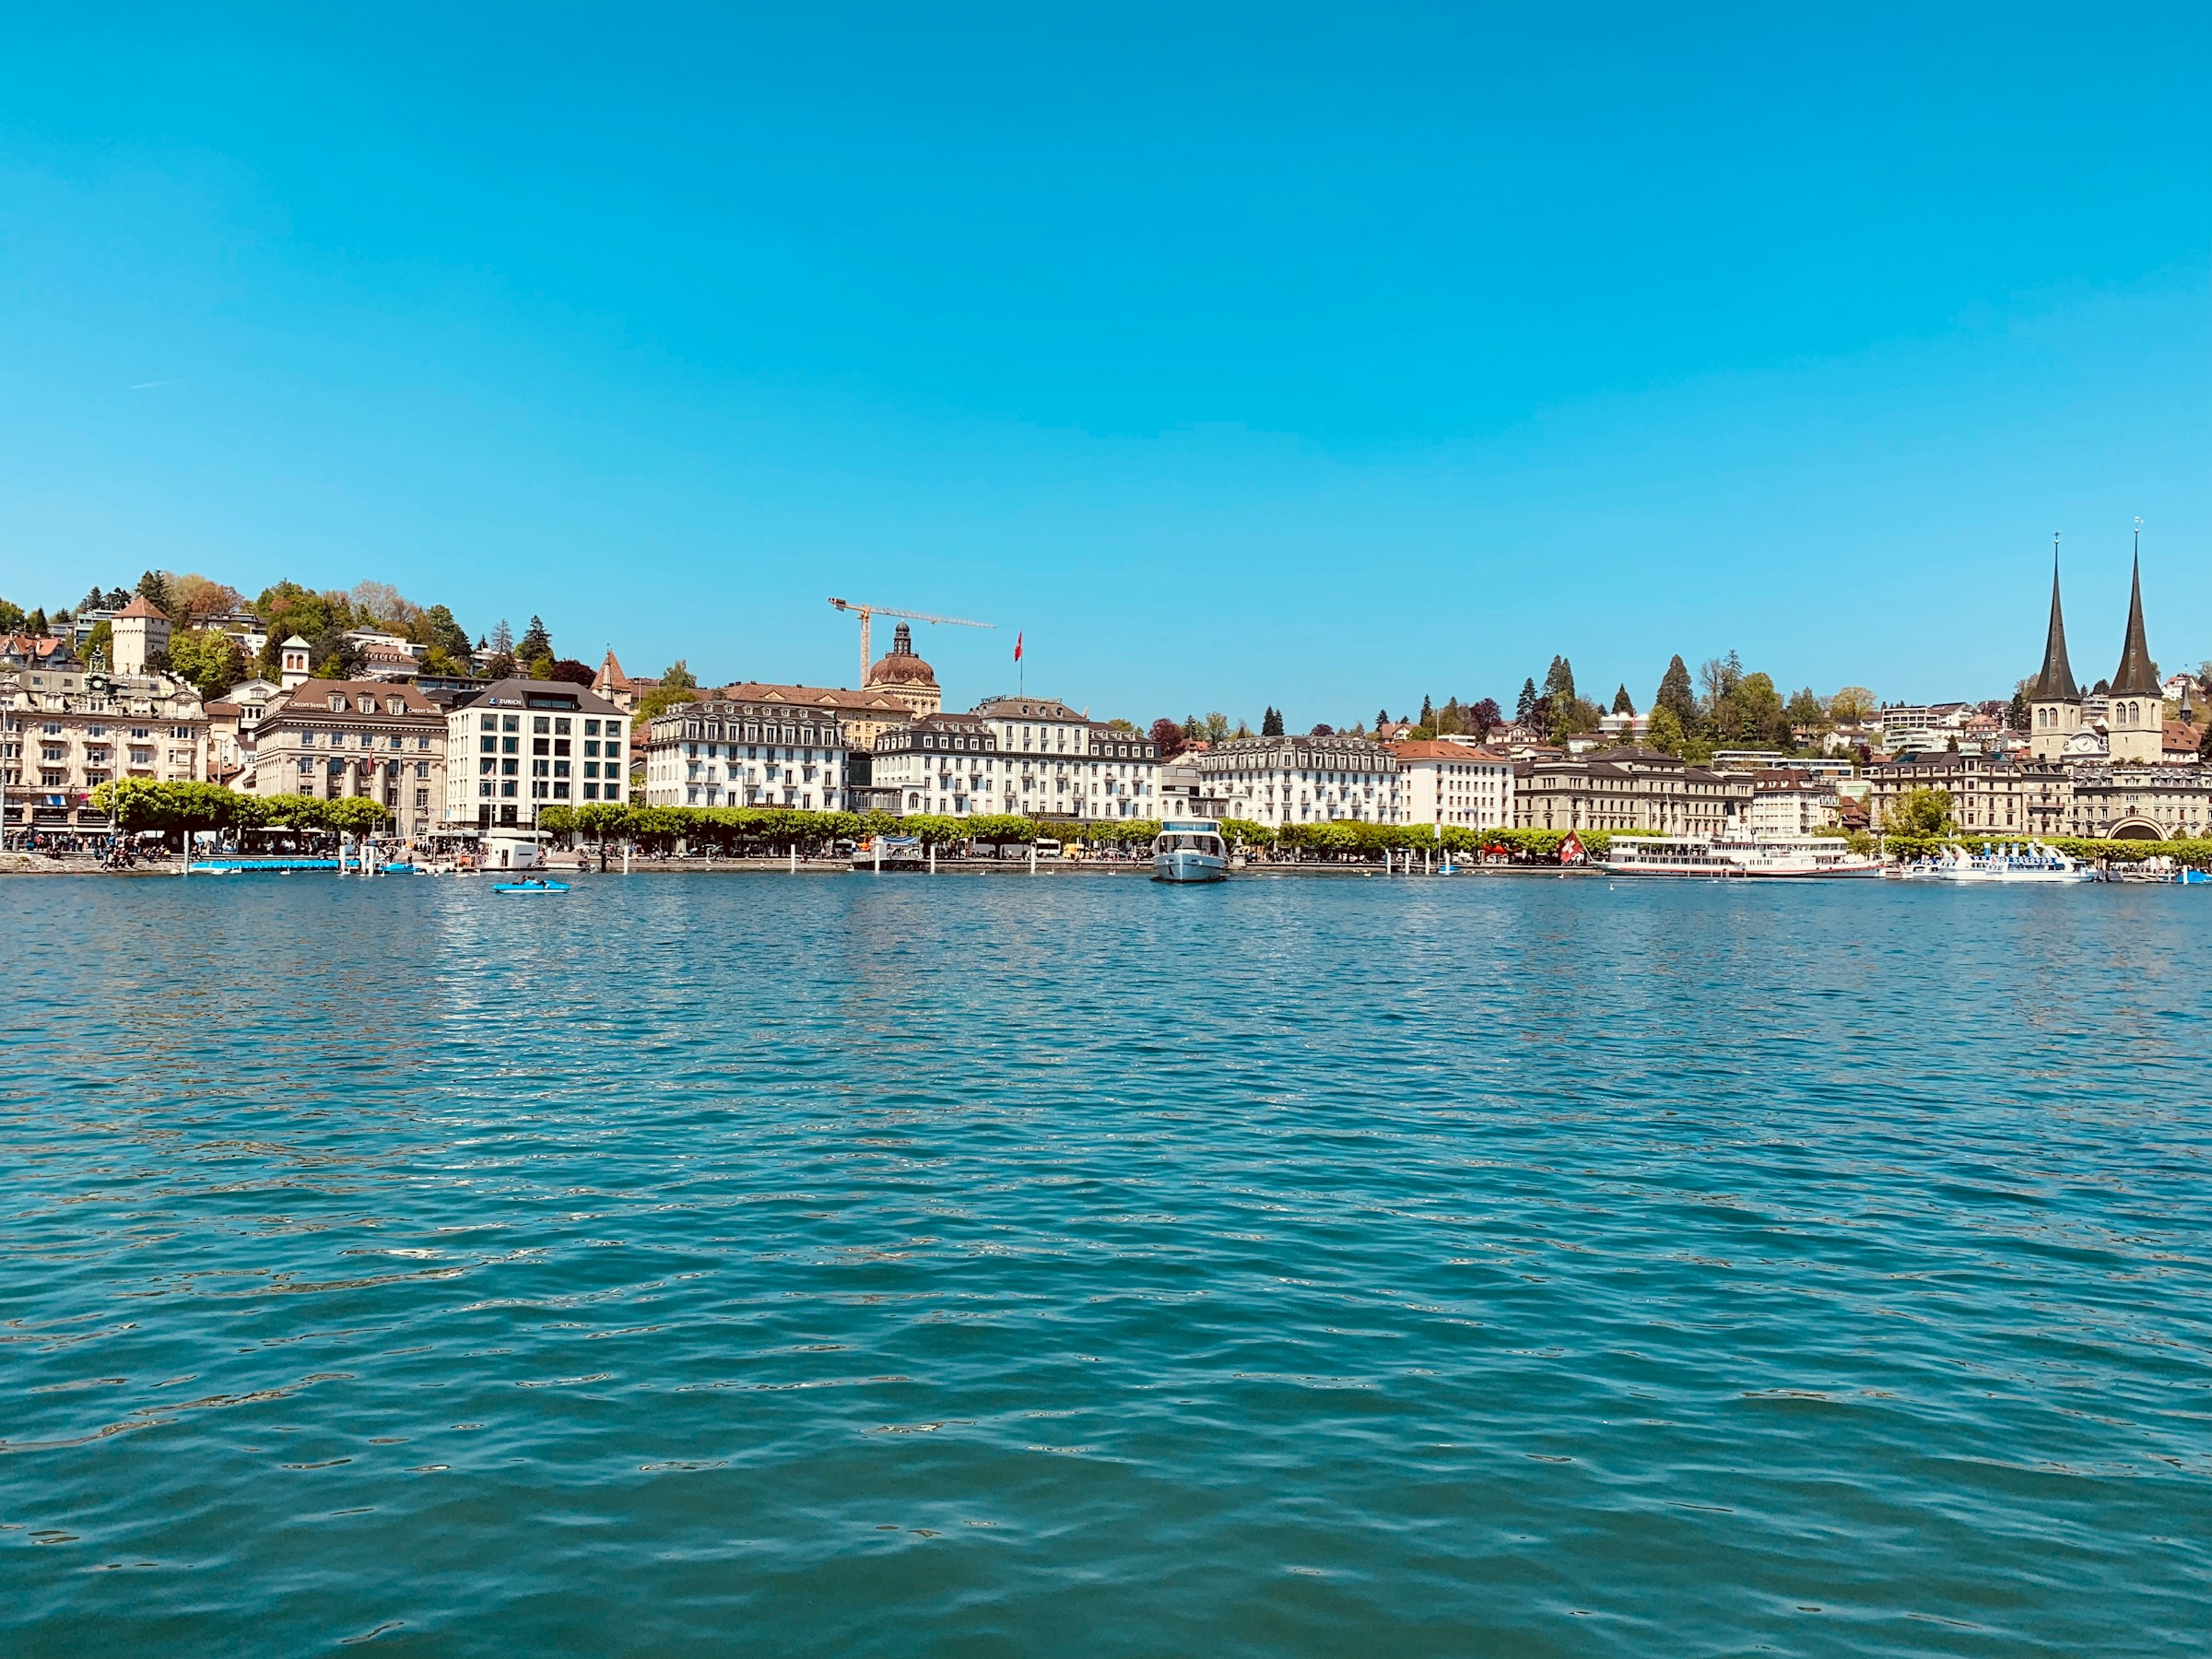 Hydrogen-powered Vessel set to Sail in Switzerland